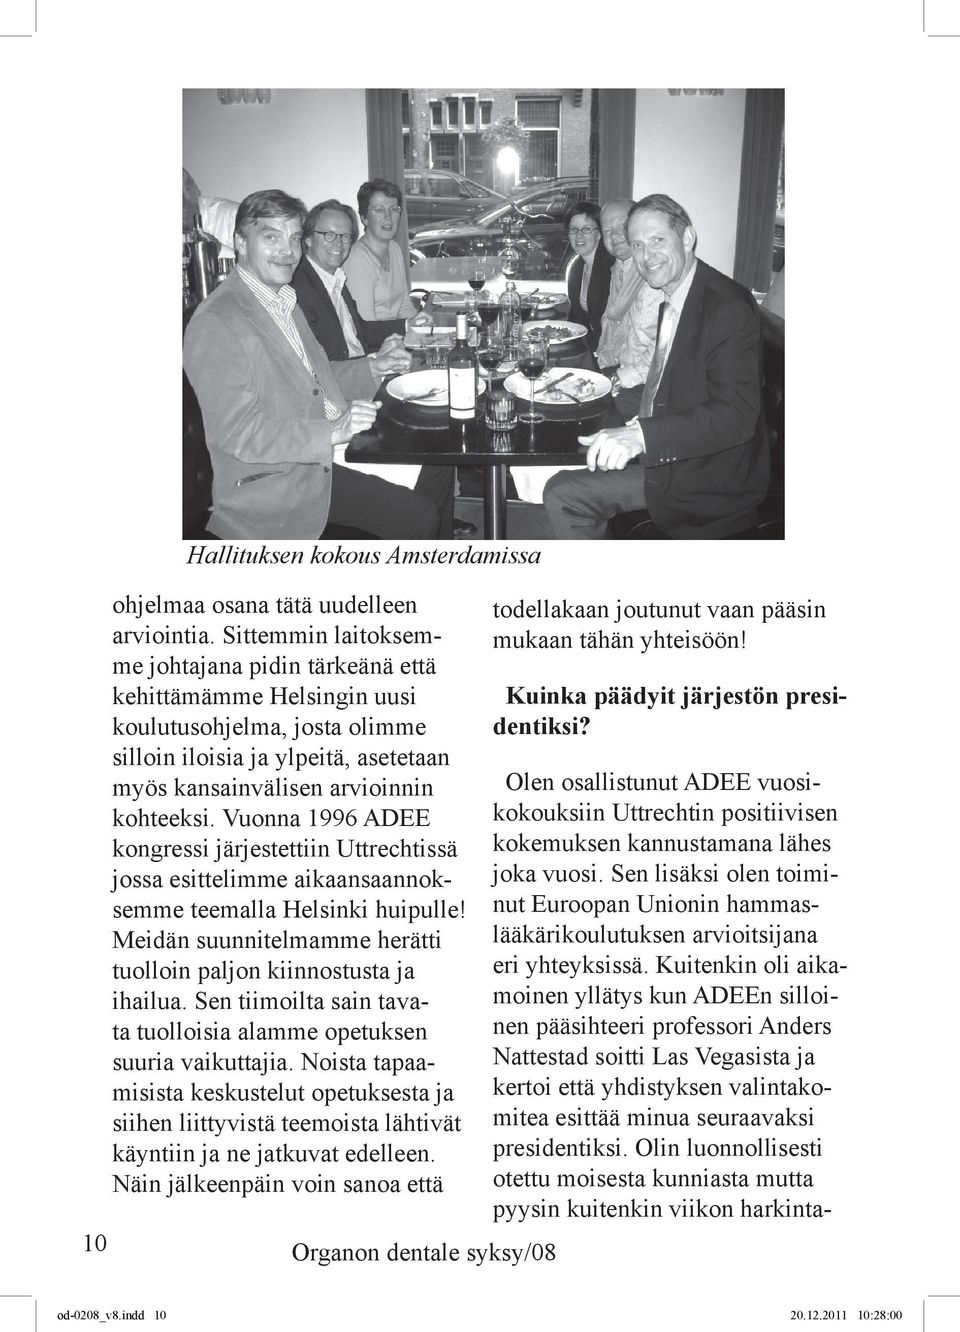 Vuonna 1996 ADEE kongressi järjestettiin Uttrechtissä jossa esittelimme aikaansaannoksemme teemalla Helsinki huipulle! Meidän suunnitelmamme herätti tuolloin paljon kiinnostusta ja ihailua.